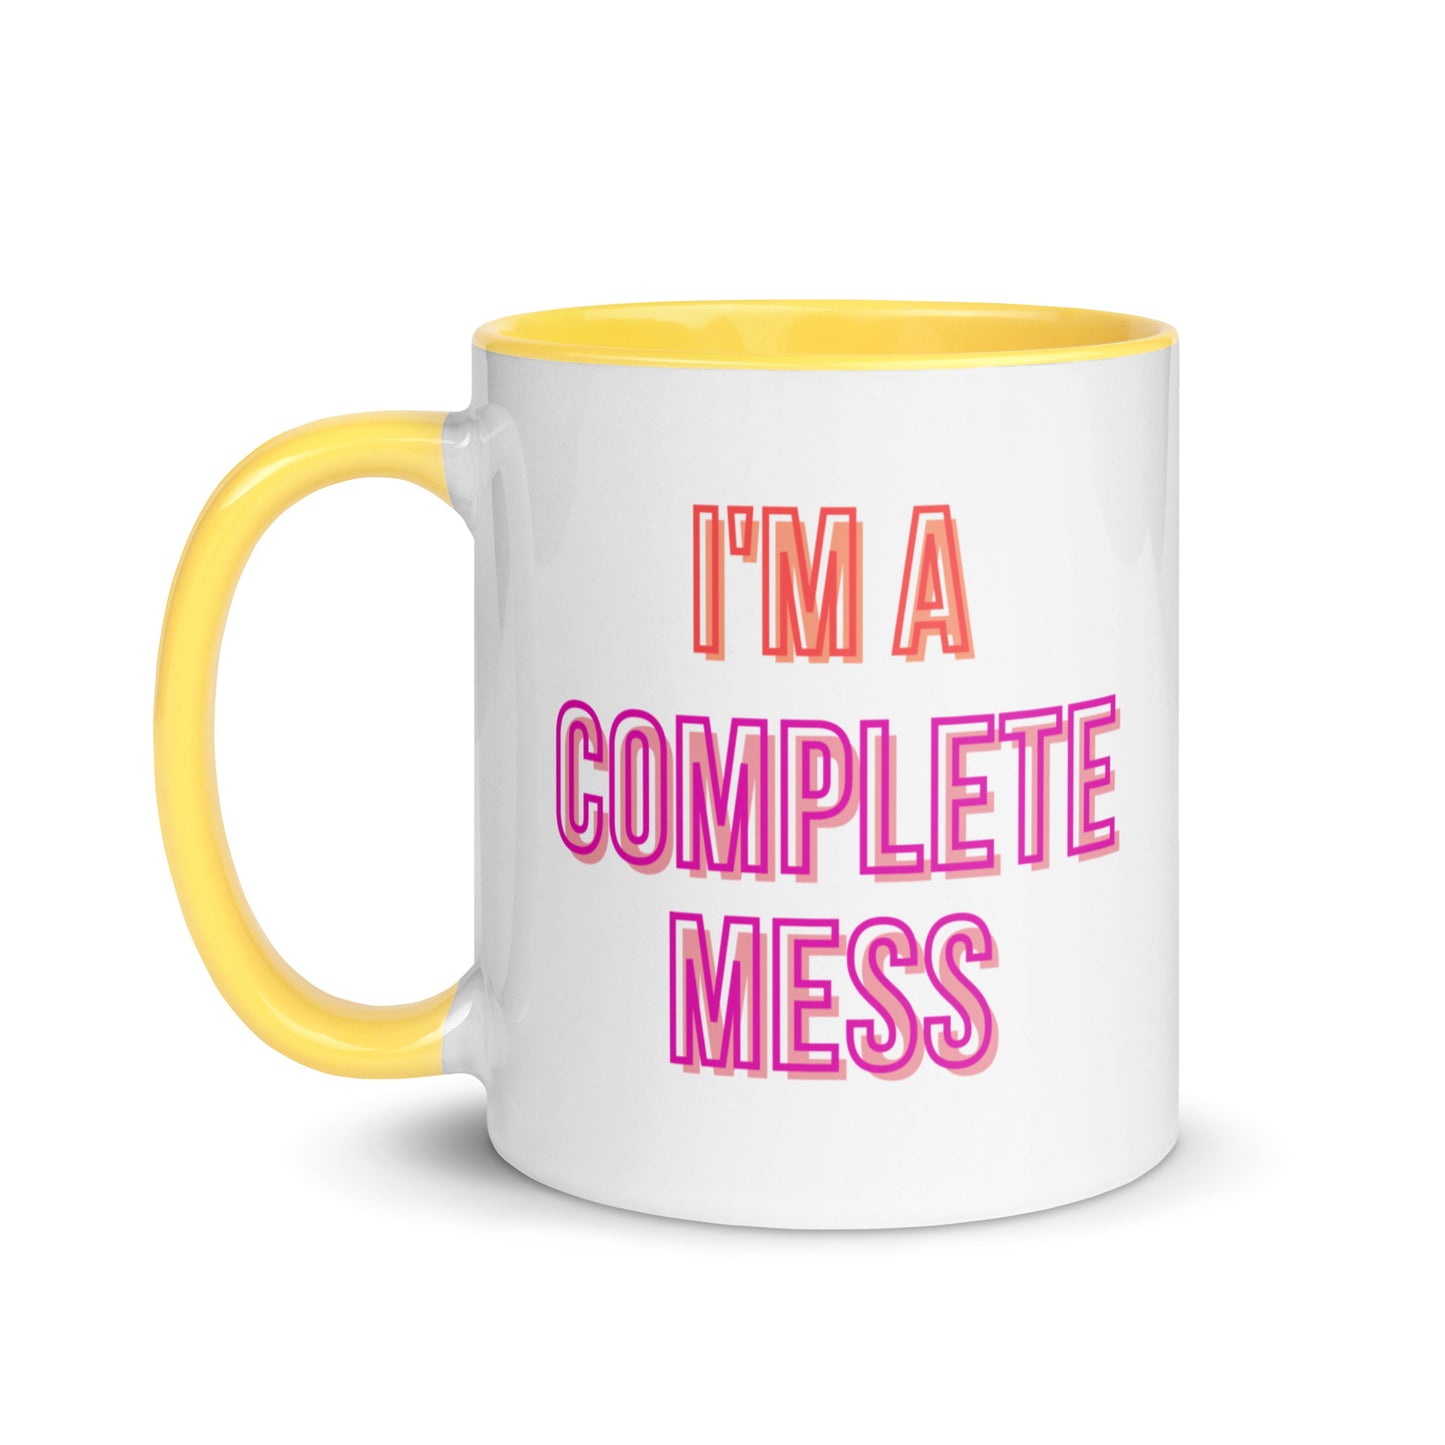 I'm a Complete Mess Mug